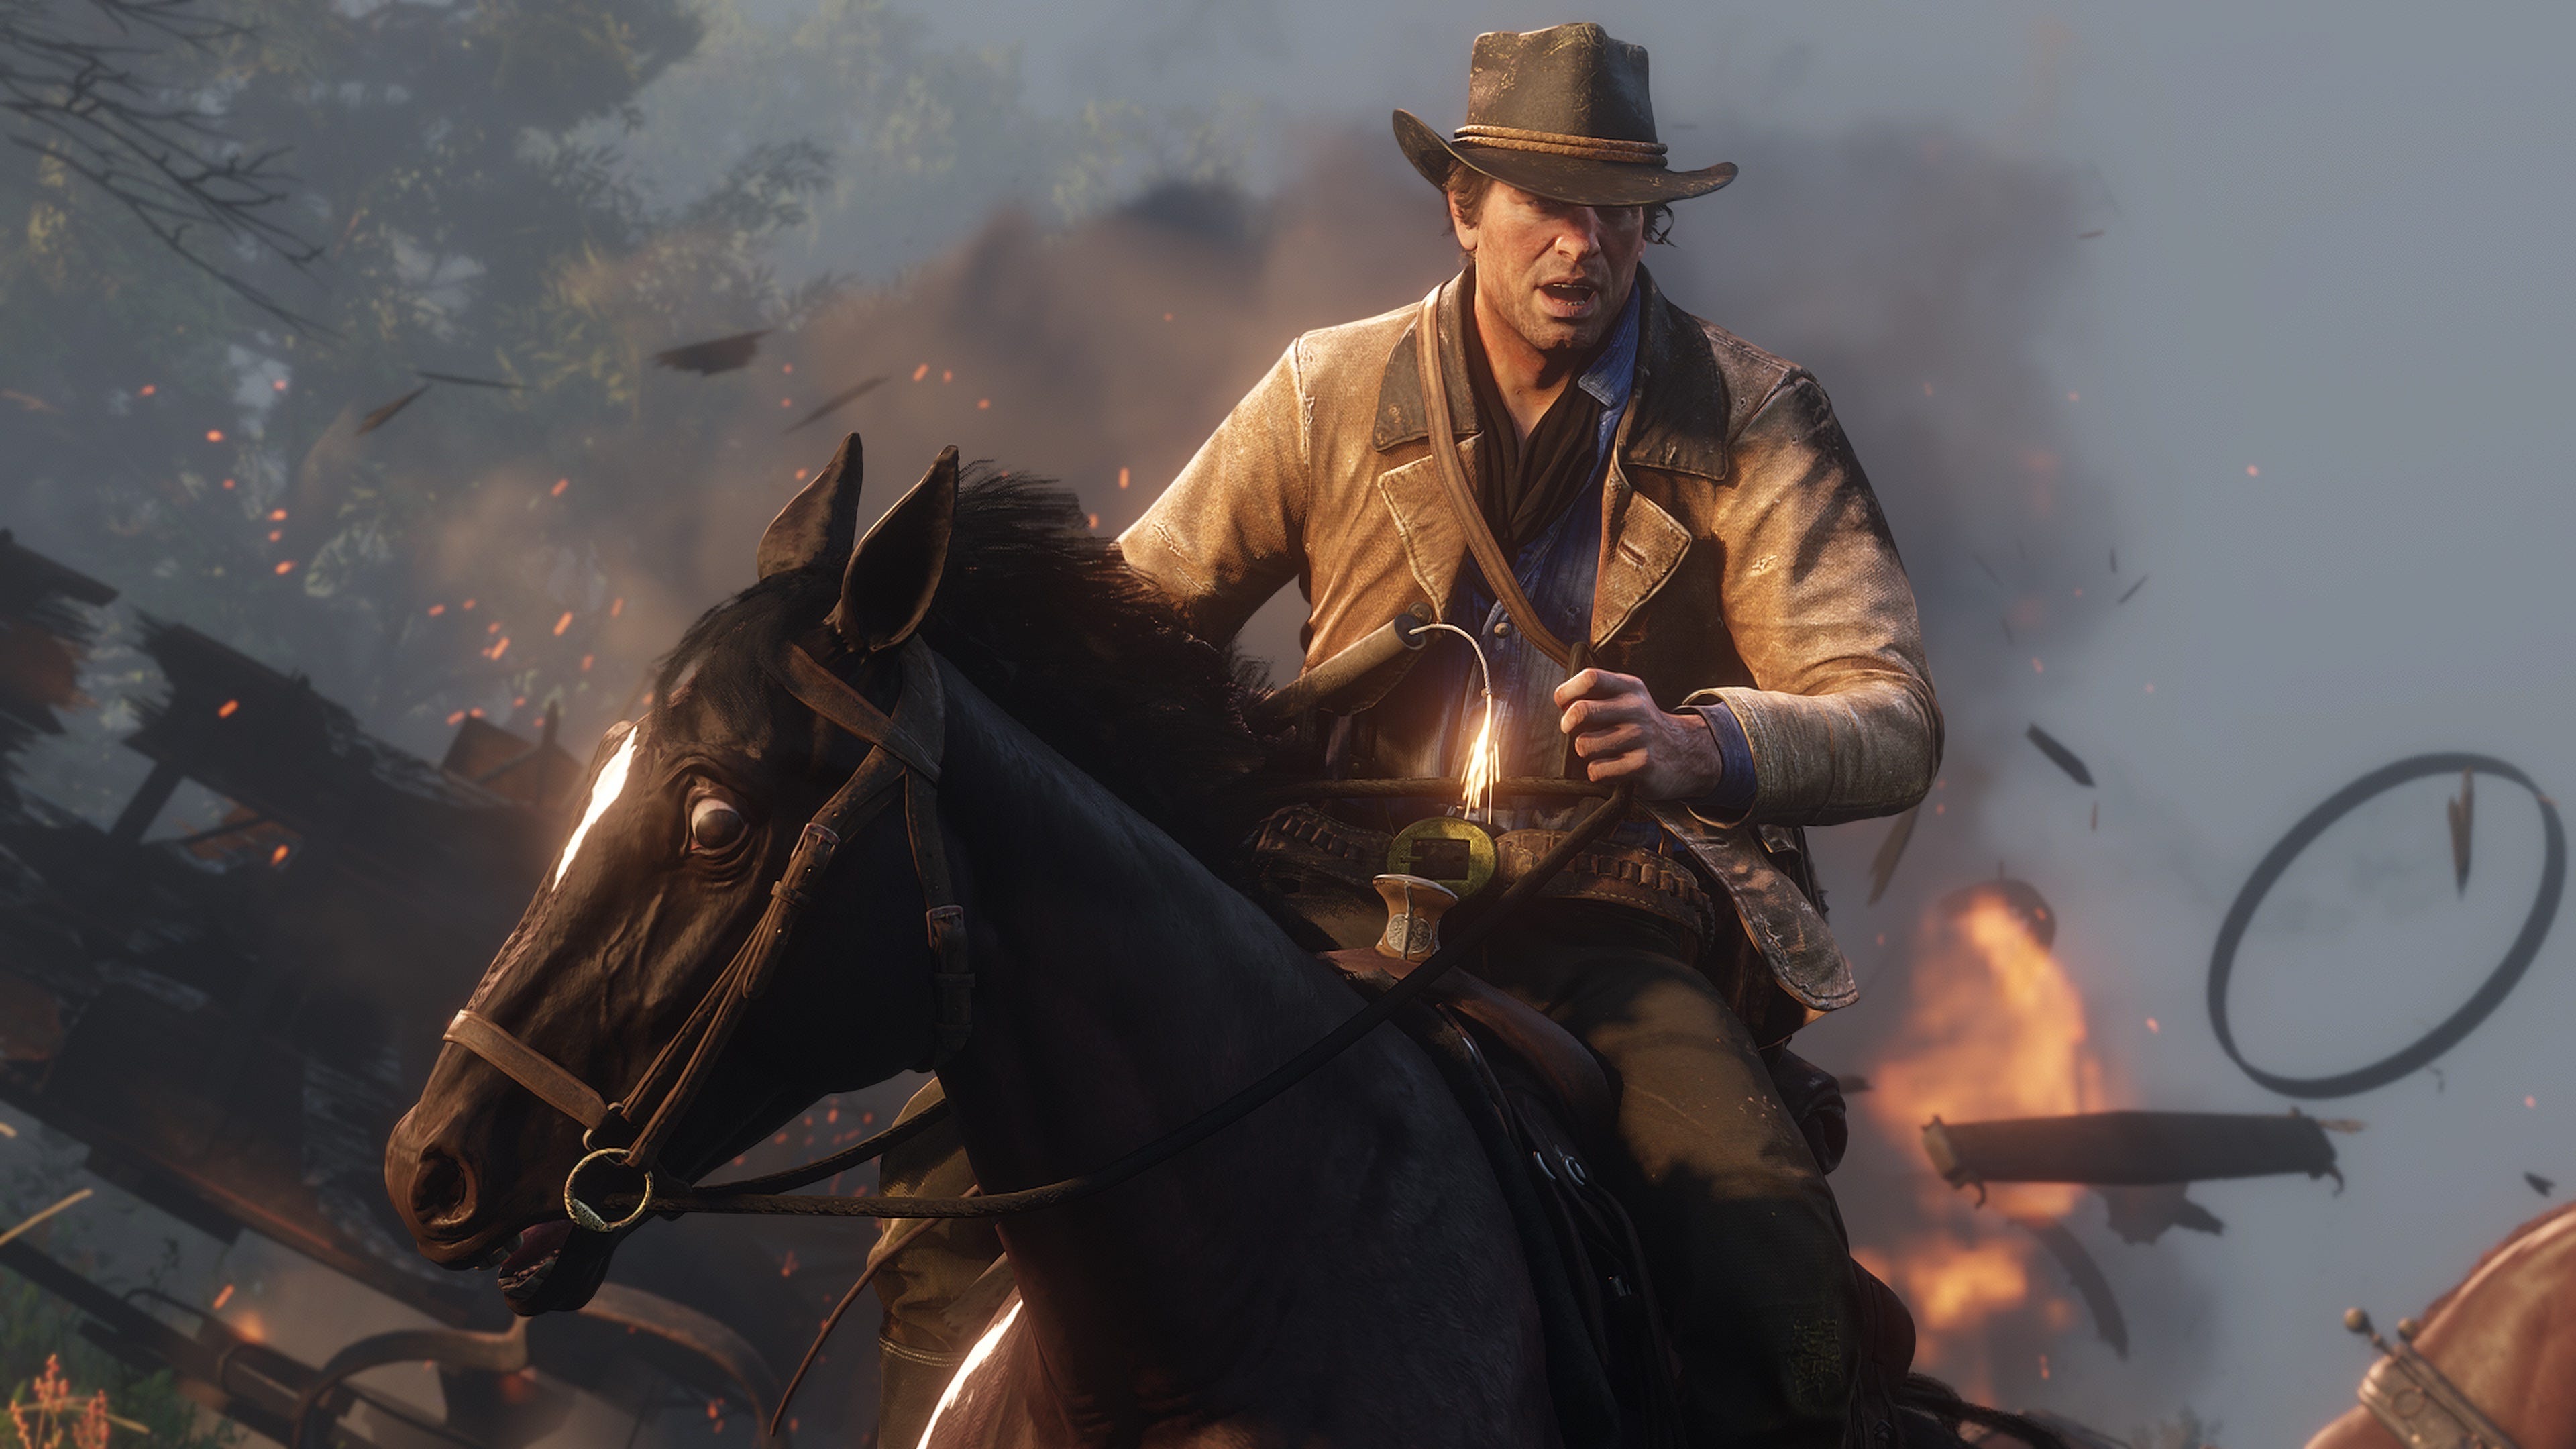 Klan verden Frugtgrøntsager Red Dead Redemption 2 makes $725 million in debut for Rockstar Games